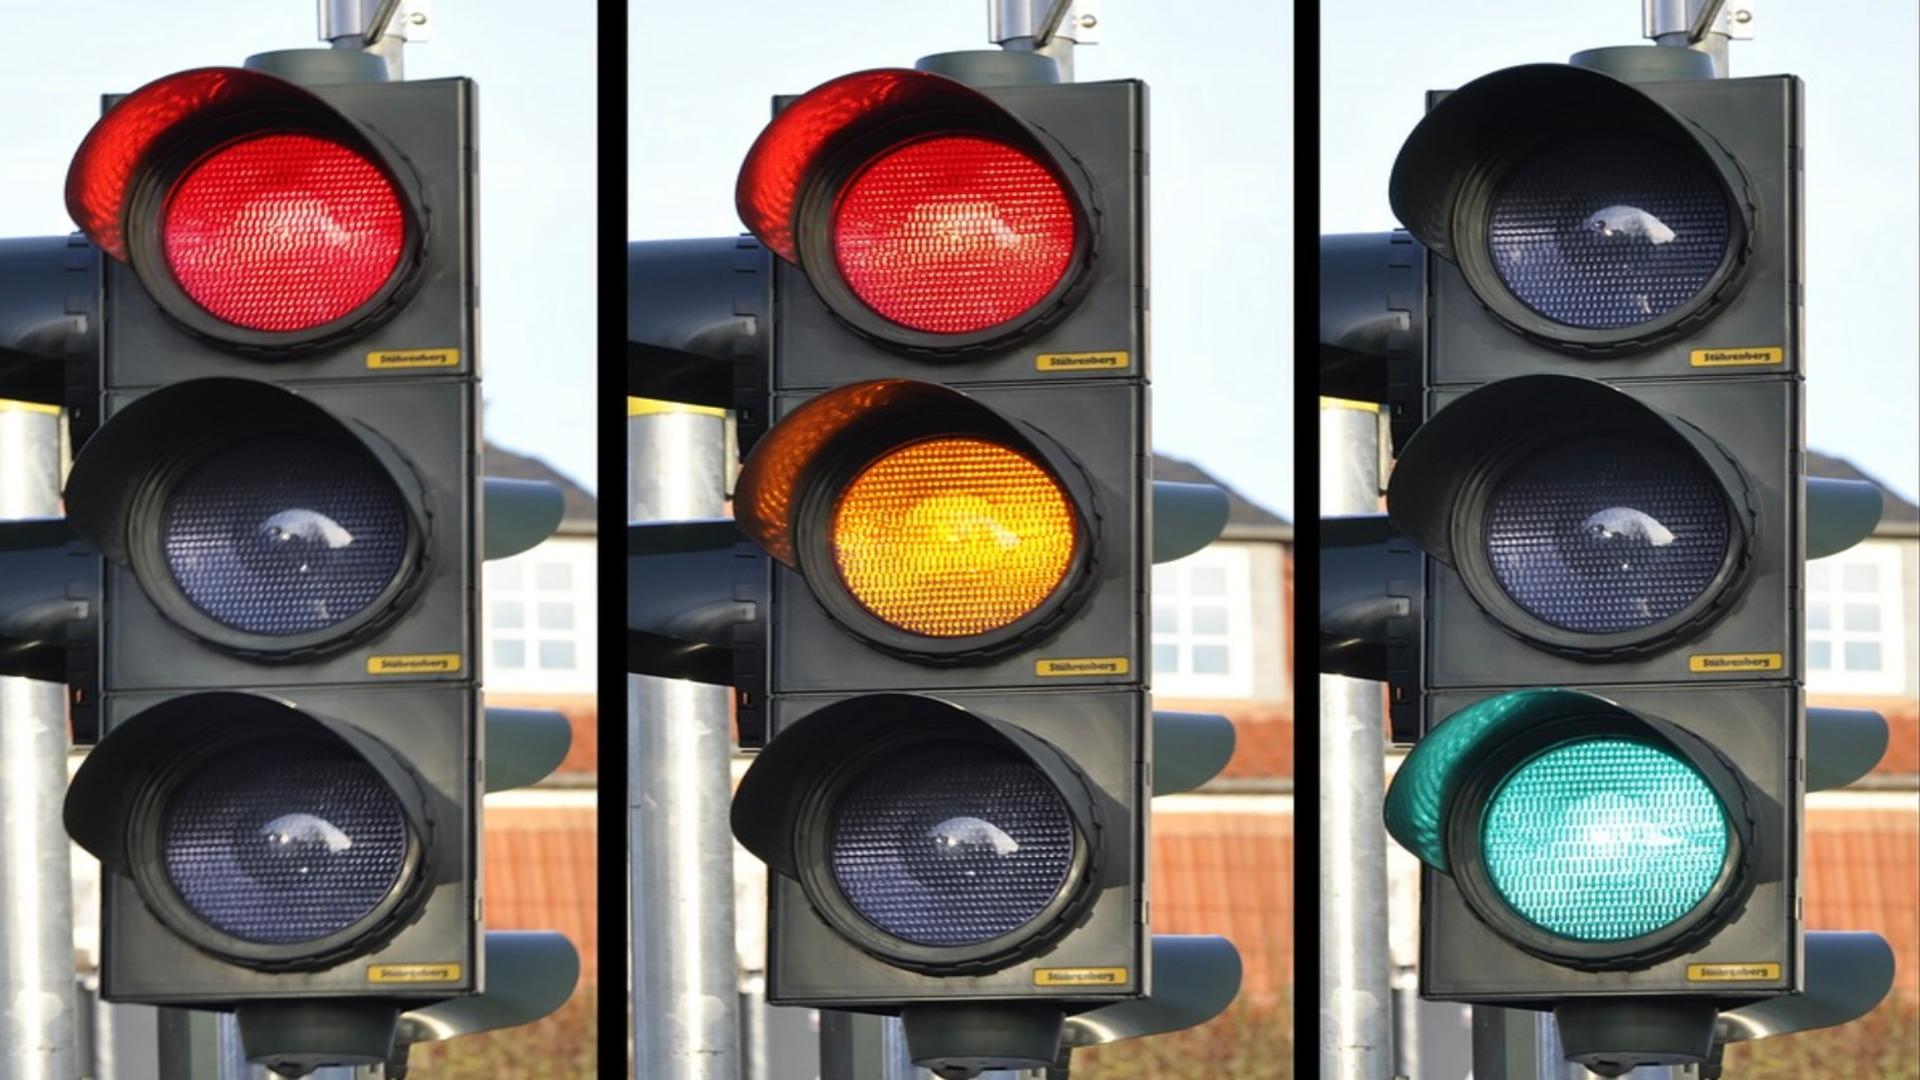 De ce au fost alese culorile roșu, galben și verde pentru semafor. Există o explicație științifică